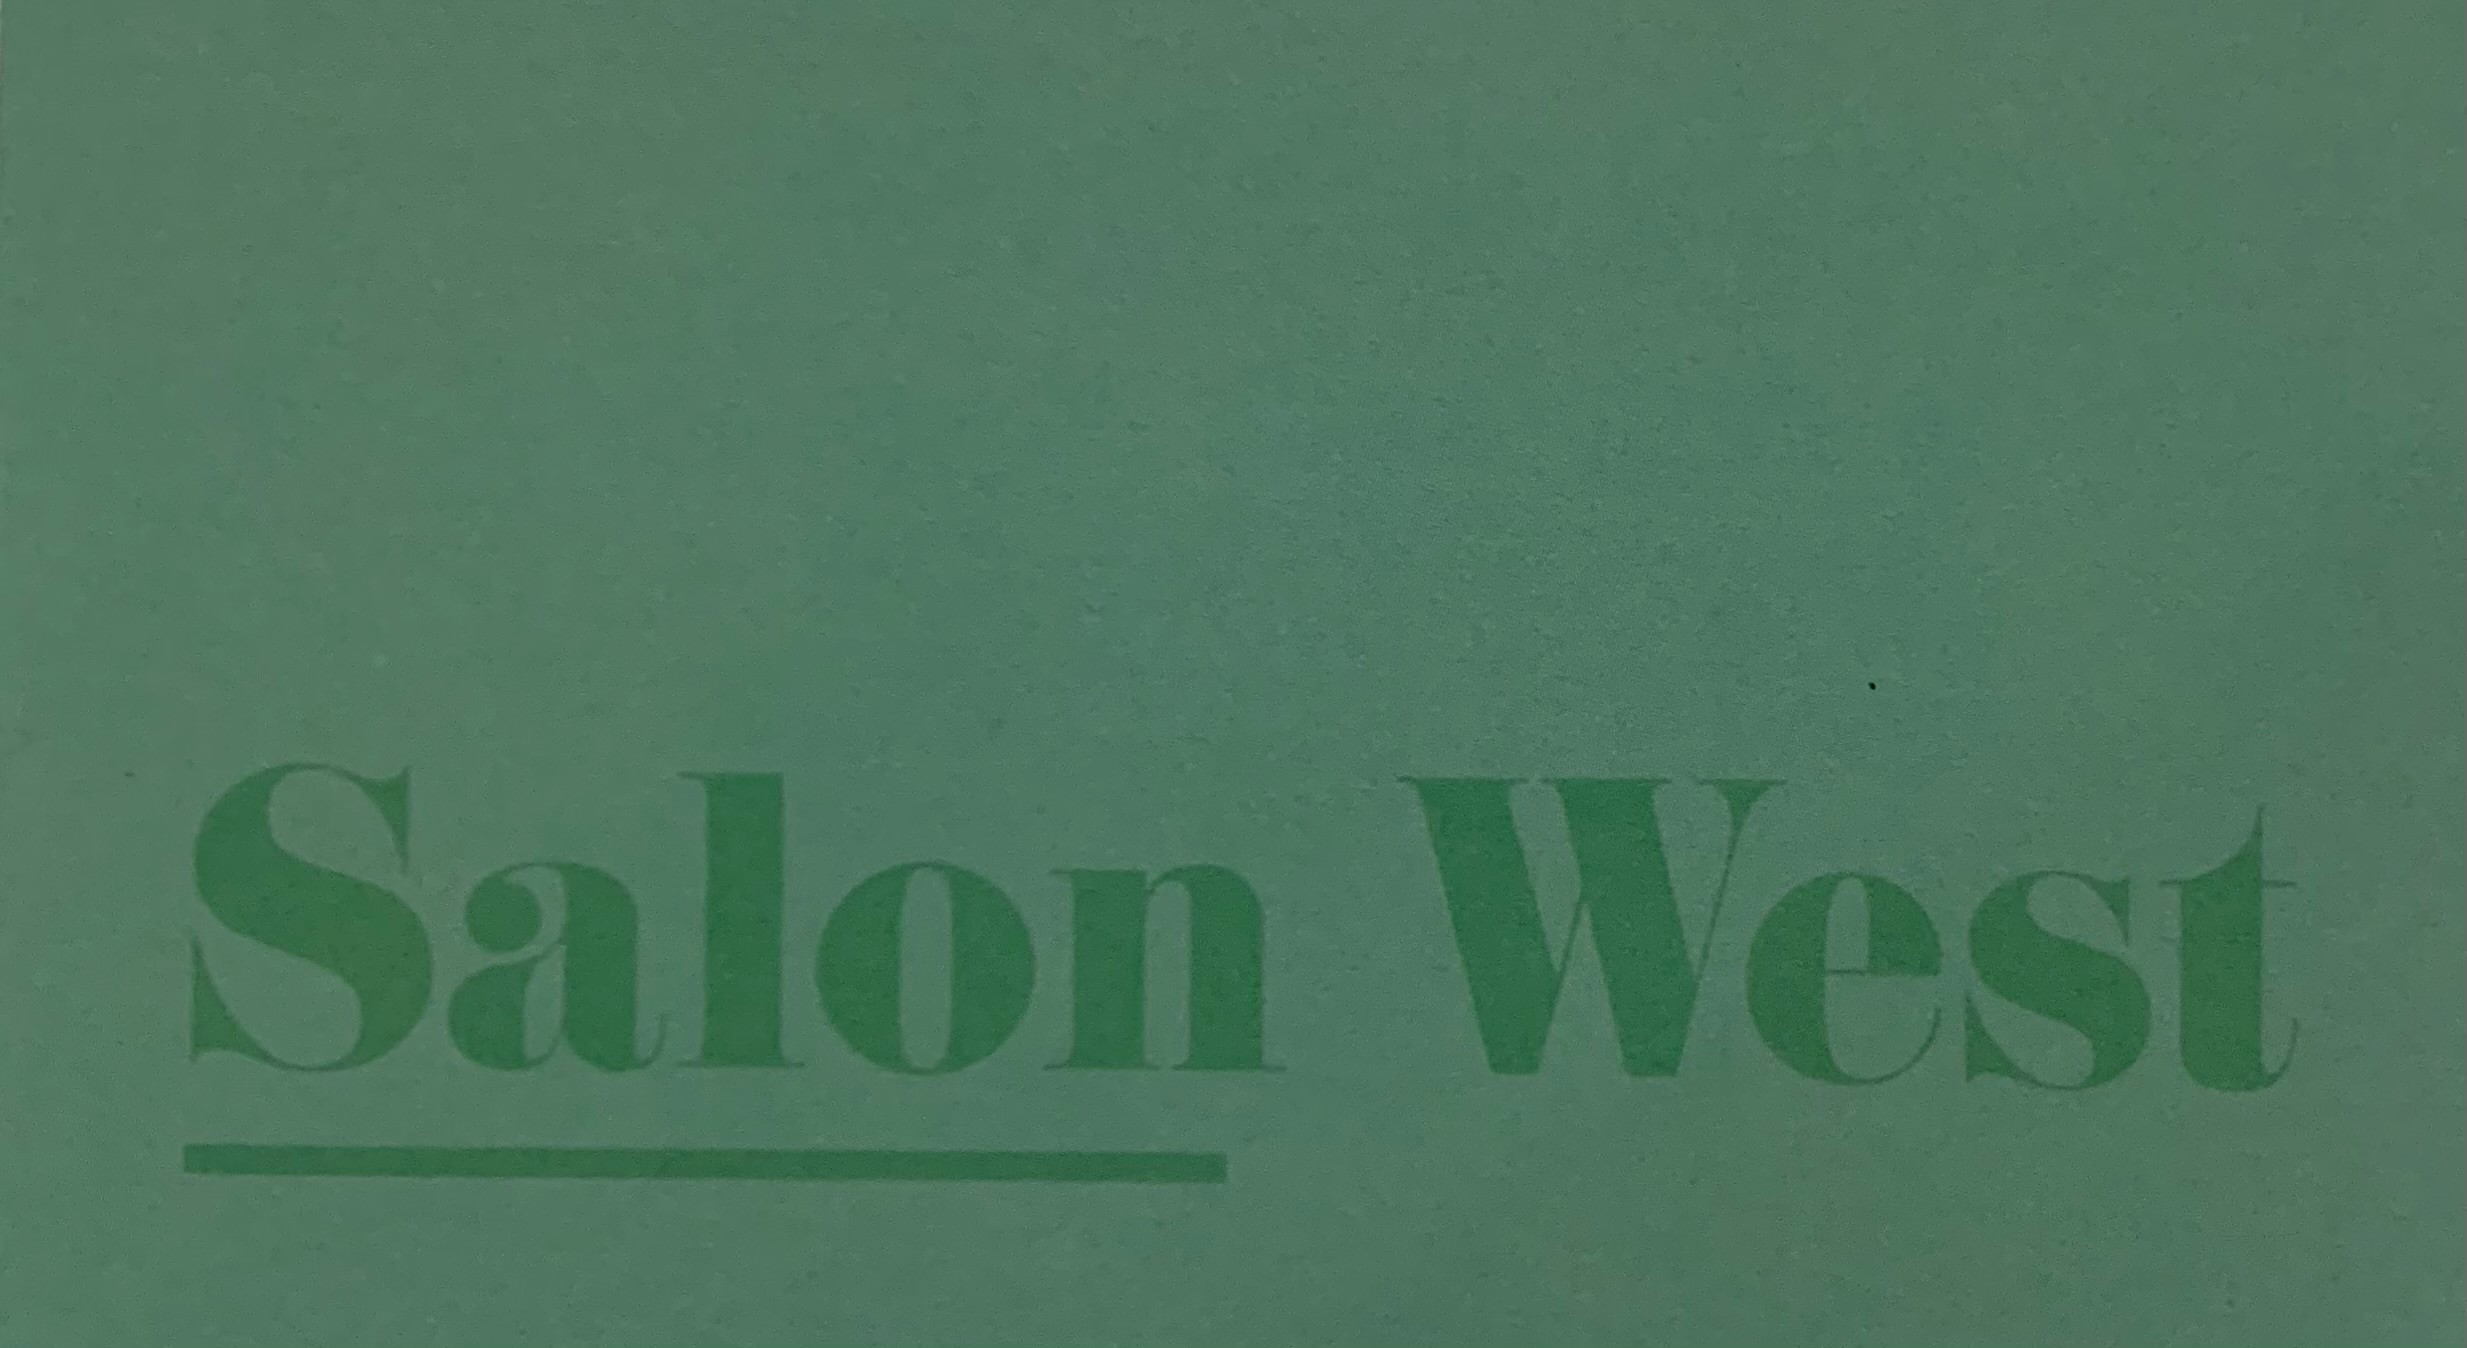 Salon West's Logo